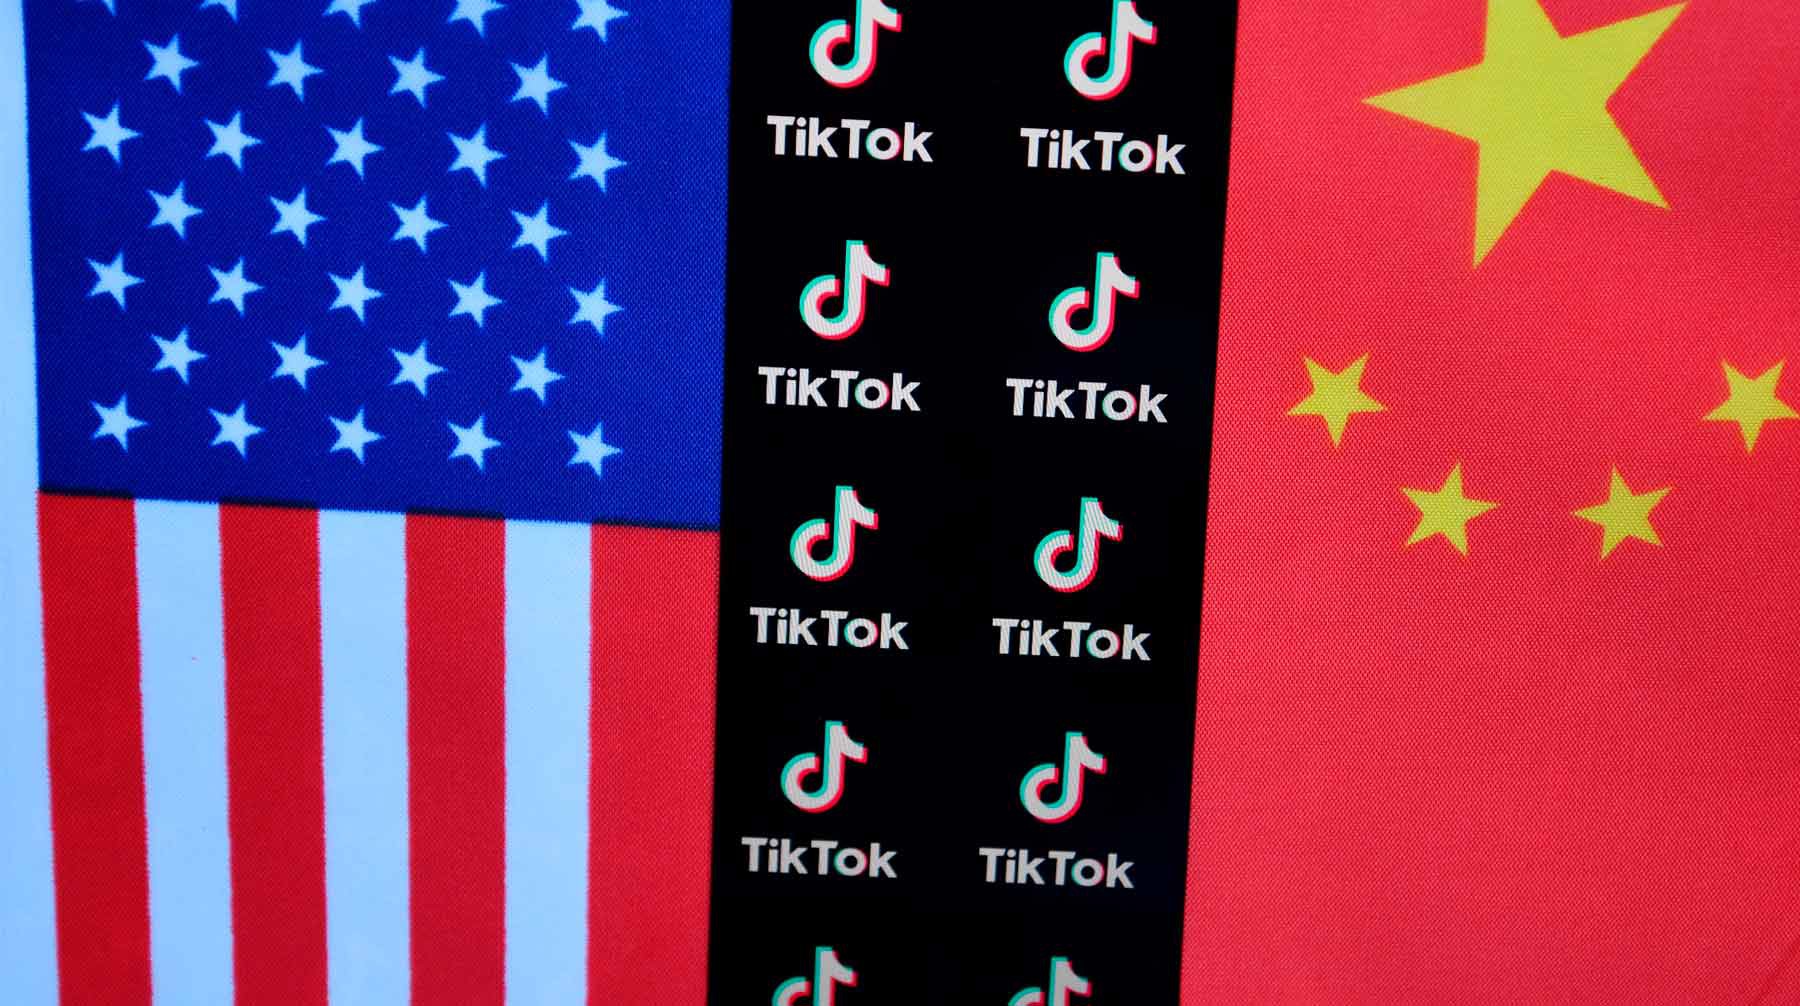 Dailystorm - Трамп подписал указы против TikTok и WeChat из-за угрозы безопасности США